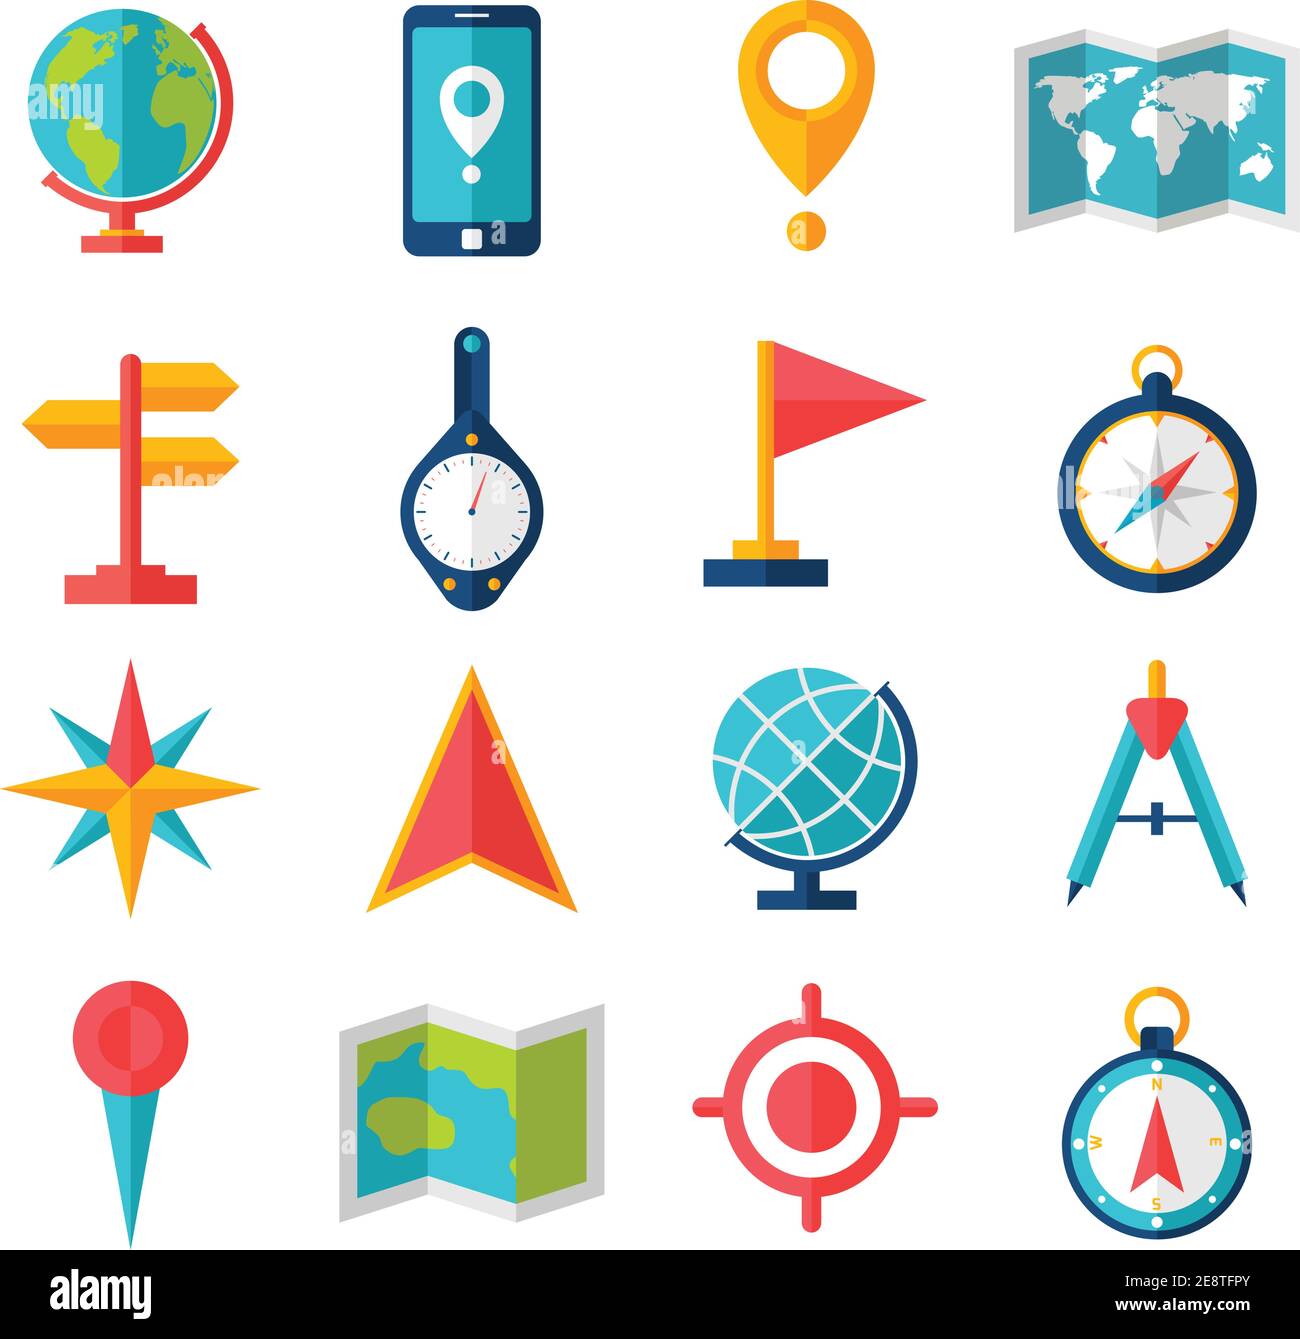 Outils de cartographie et de géographie, accessoires et jeu d'icônes plates  de symboles illustration vectorielle isolée Image Vectorielle Stock - Alamy